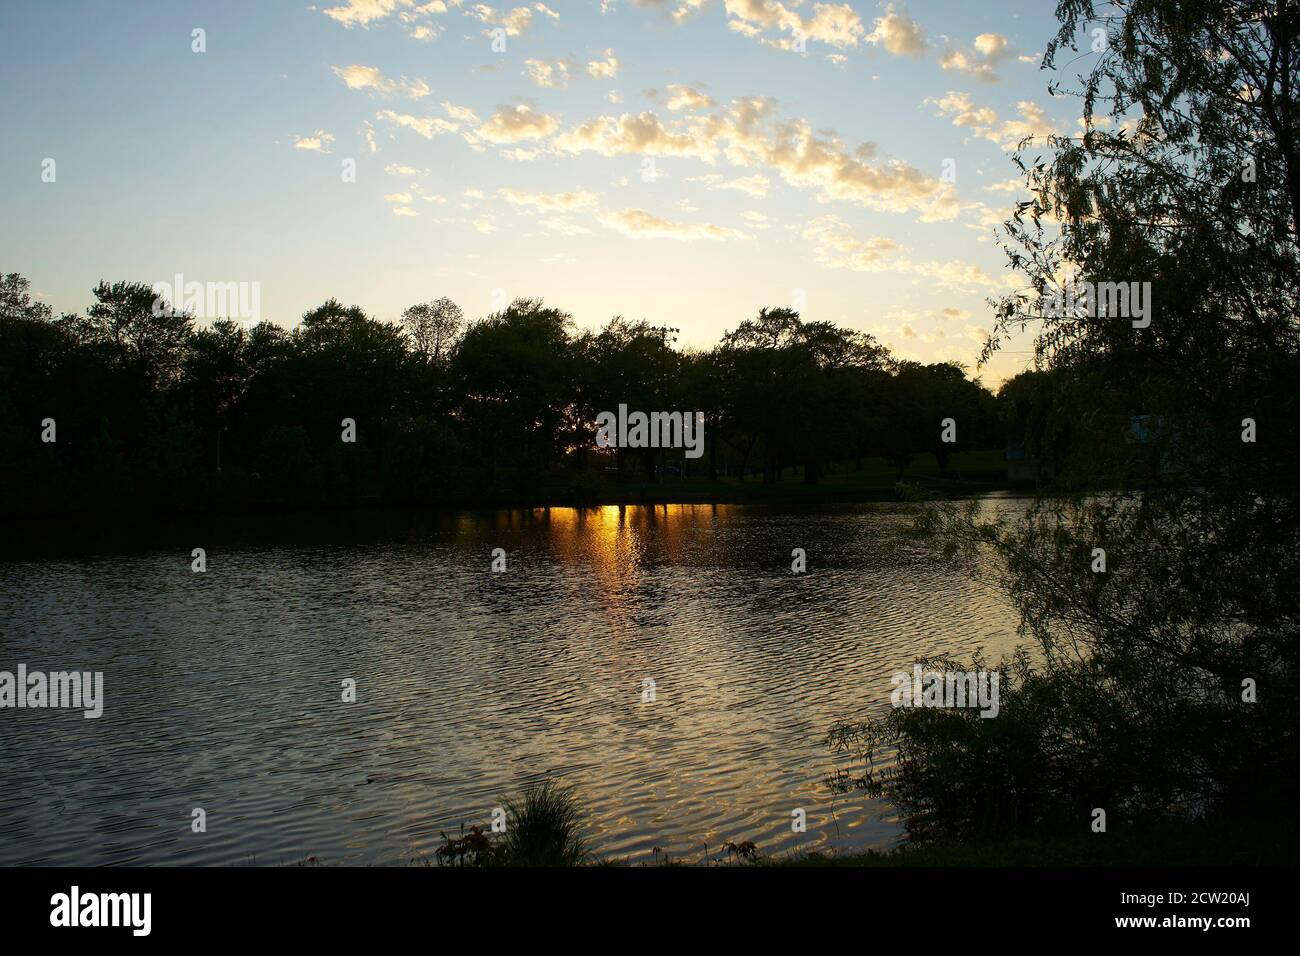 Kosciuszko Park at dusk, Milwaukee Wisconsin. Stock Photo